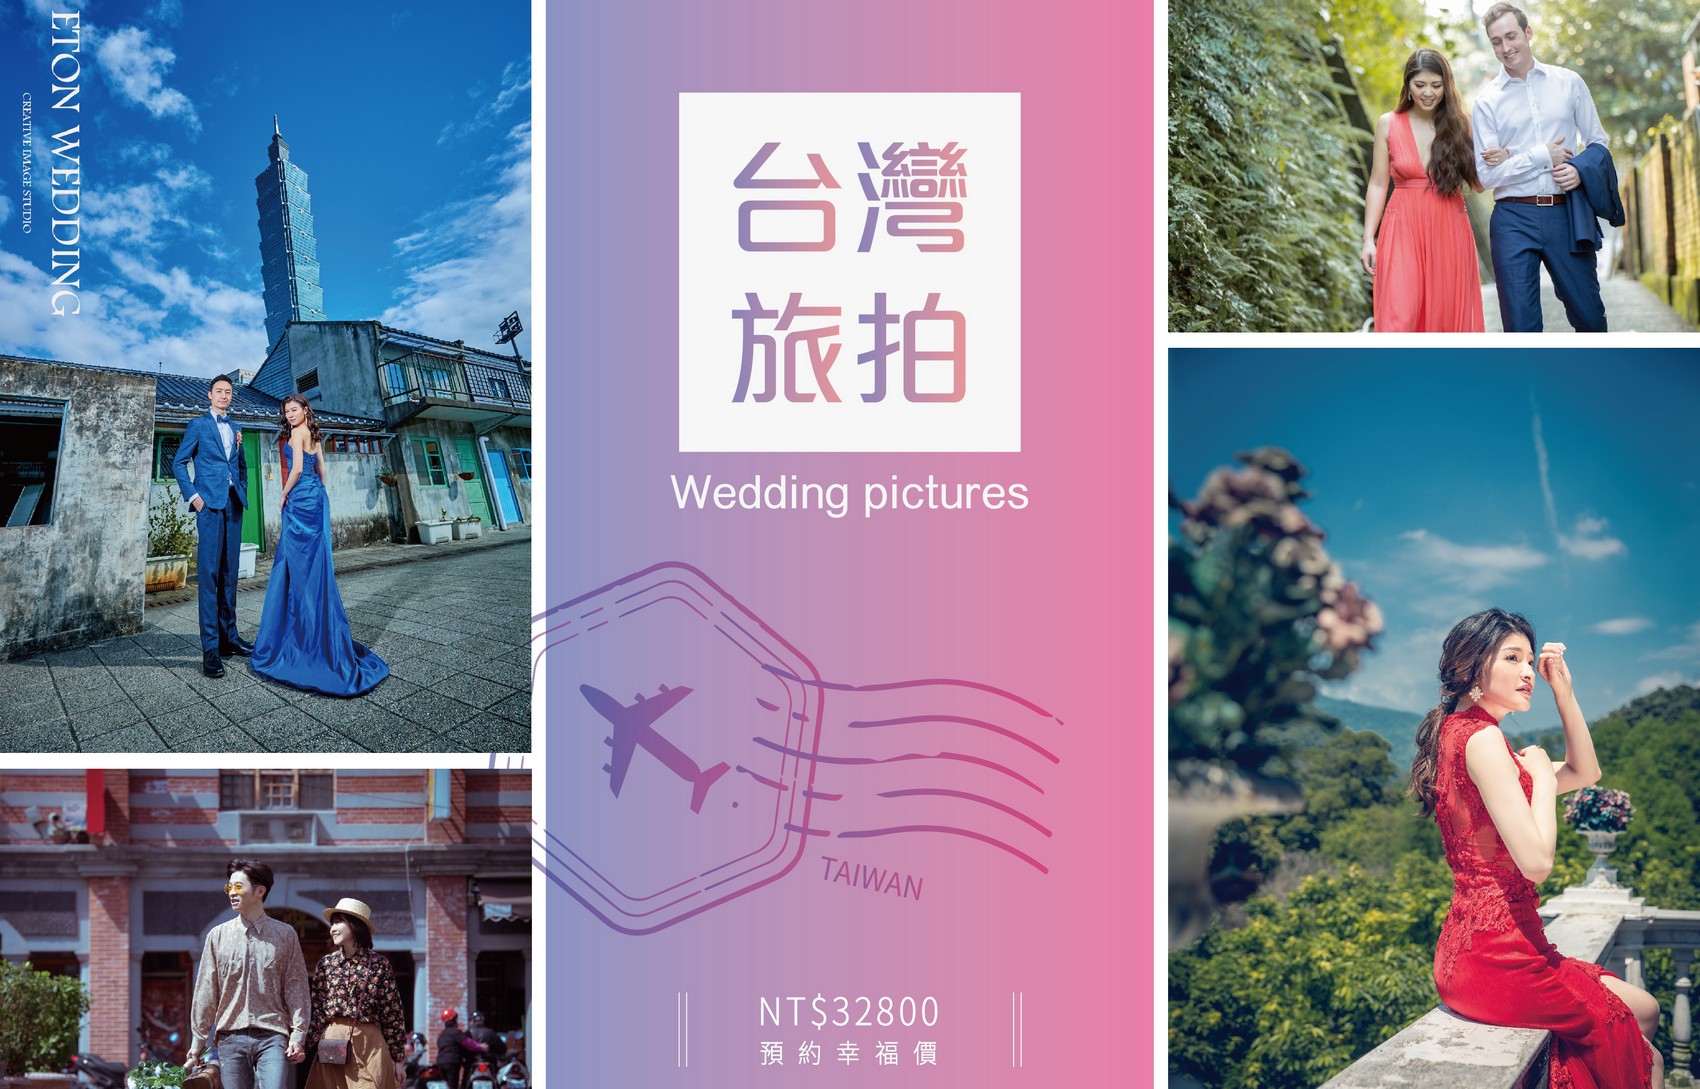 台灣 婚紗工作室,台灣 婚紗攝影價格,板橋拍婚紗,板橋 婚紗攝影,板橋 婚紗工作室